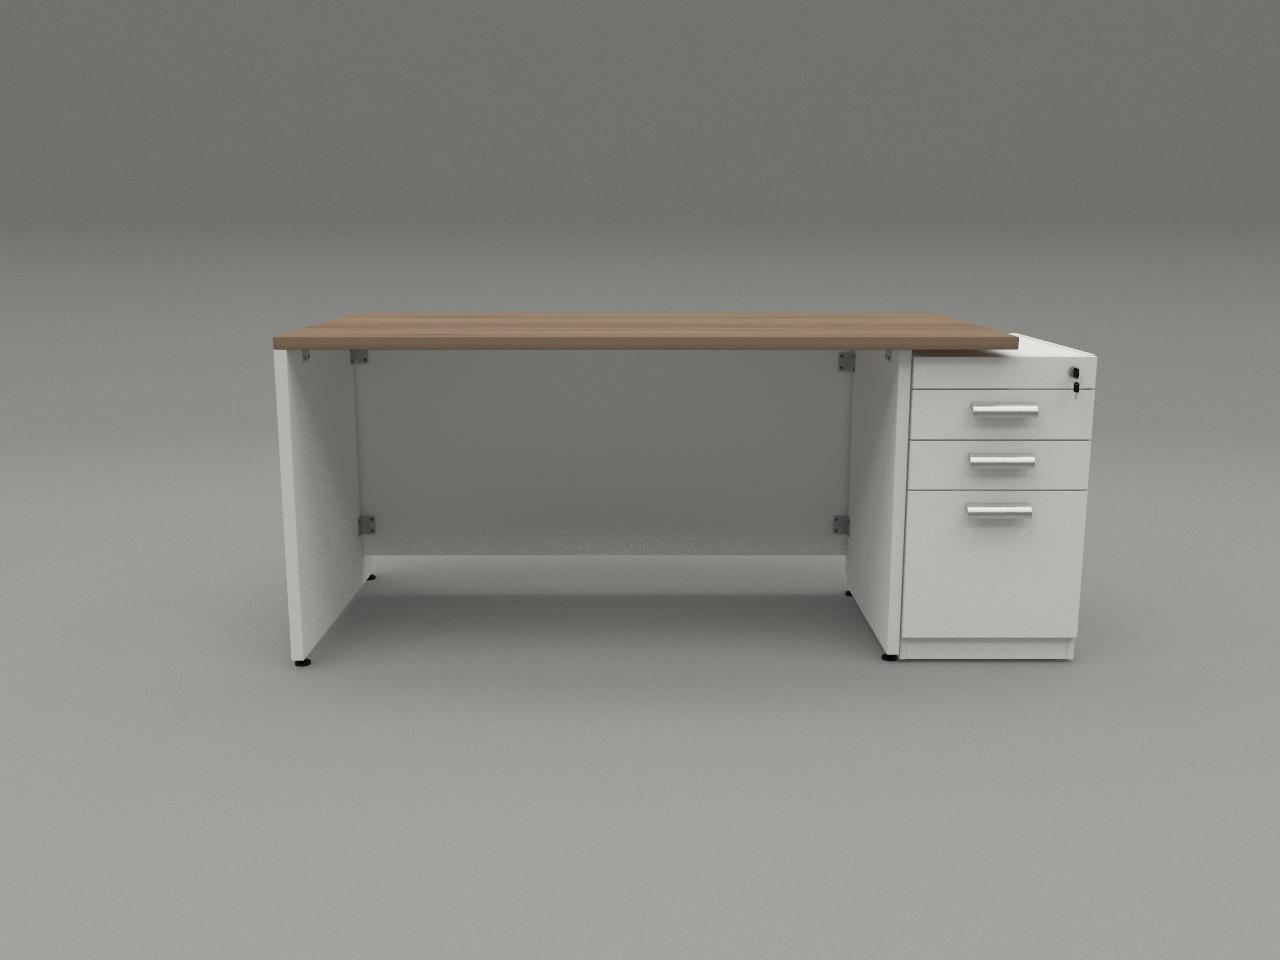 escritorio kuvolks 160 x 80 cm pedestal independiente con ruedas